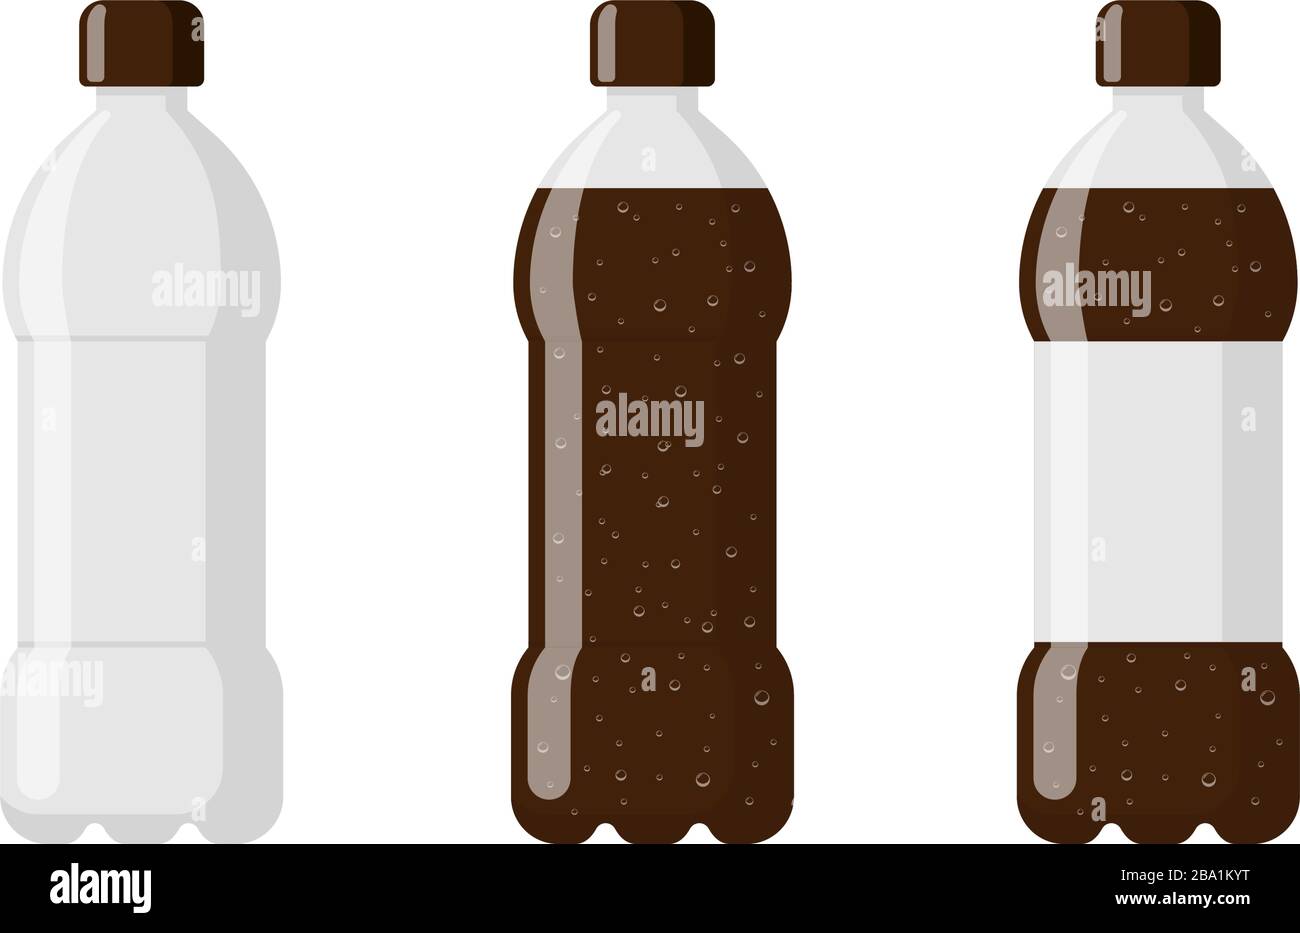 une petite bouteille en plastique sur fond blanc Photo Stock - Alamy